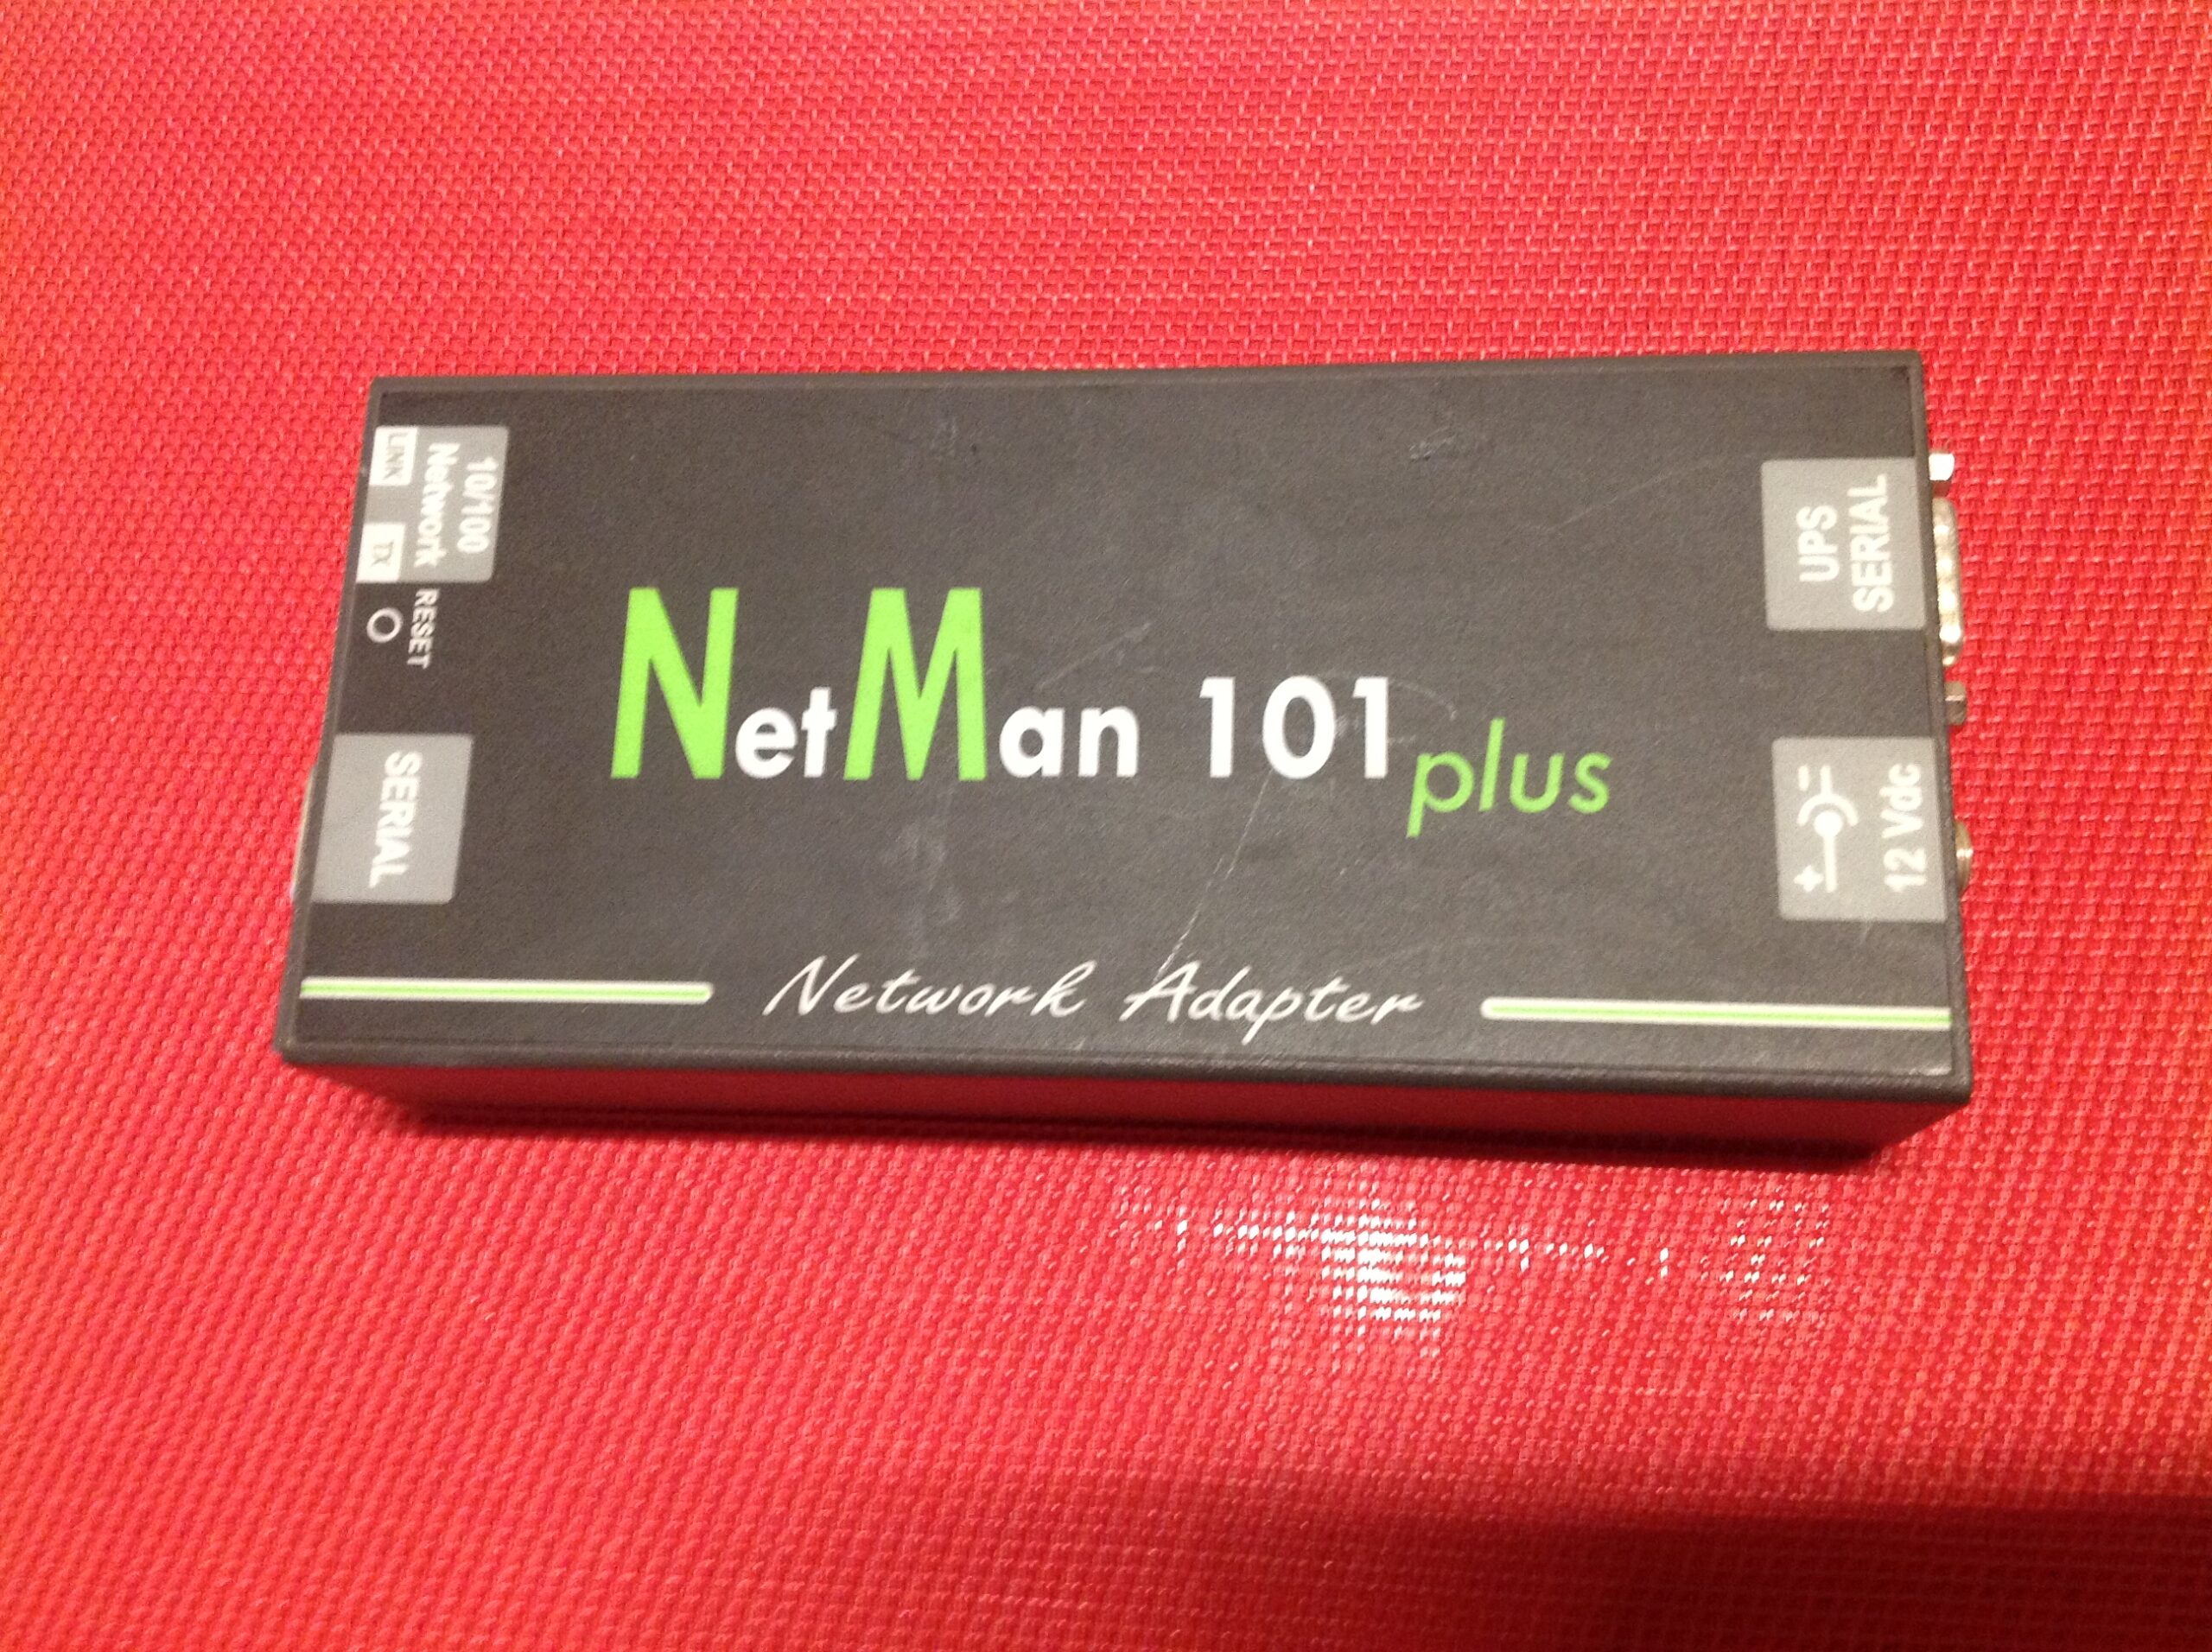 Network Adapter Net Man 101 plus für PC Notstromversorgung